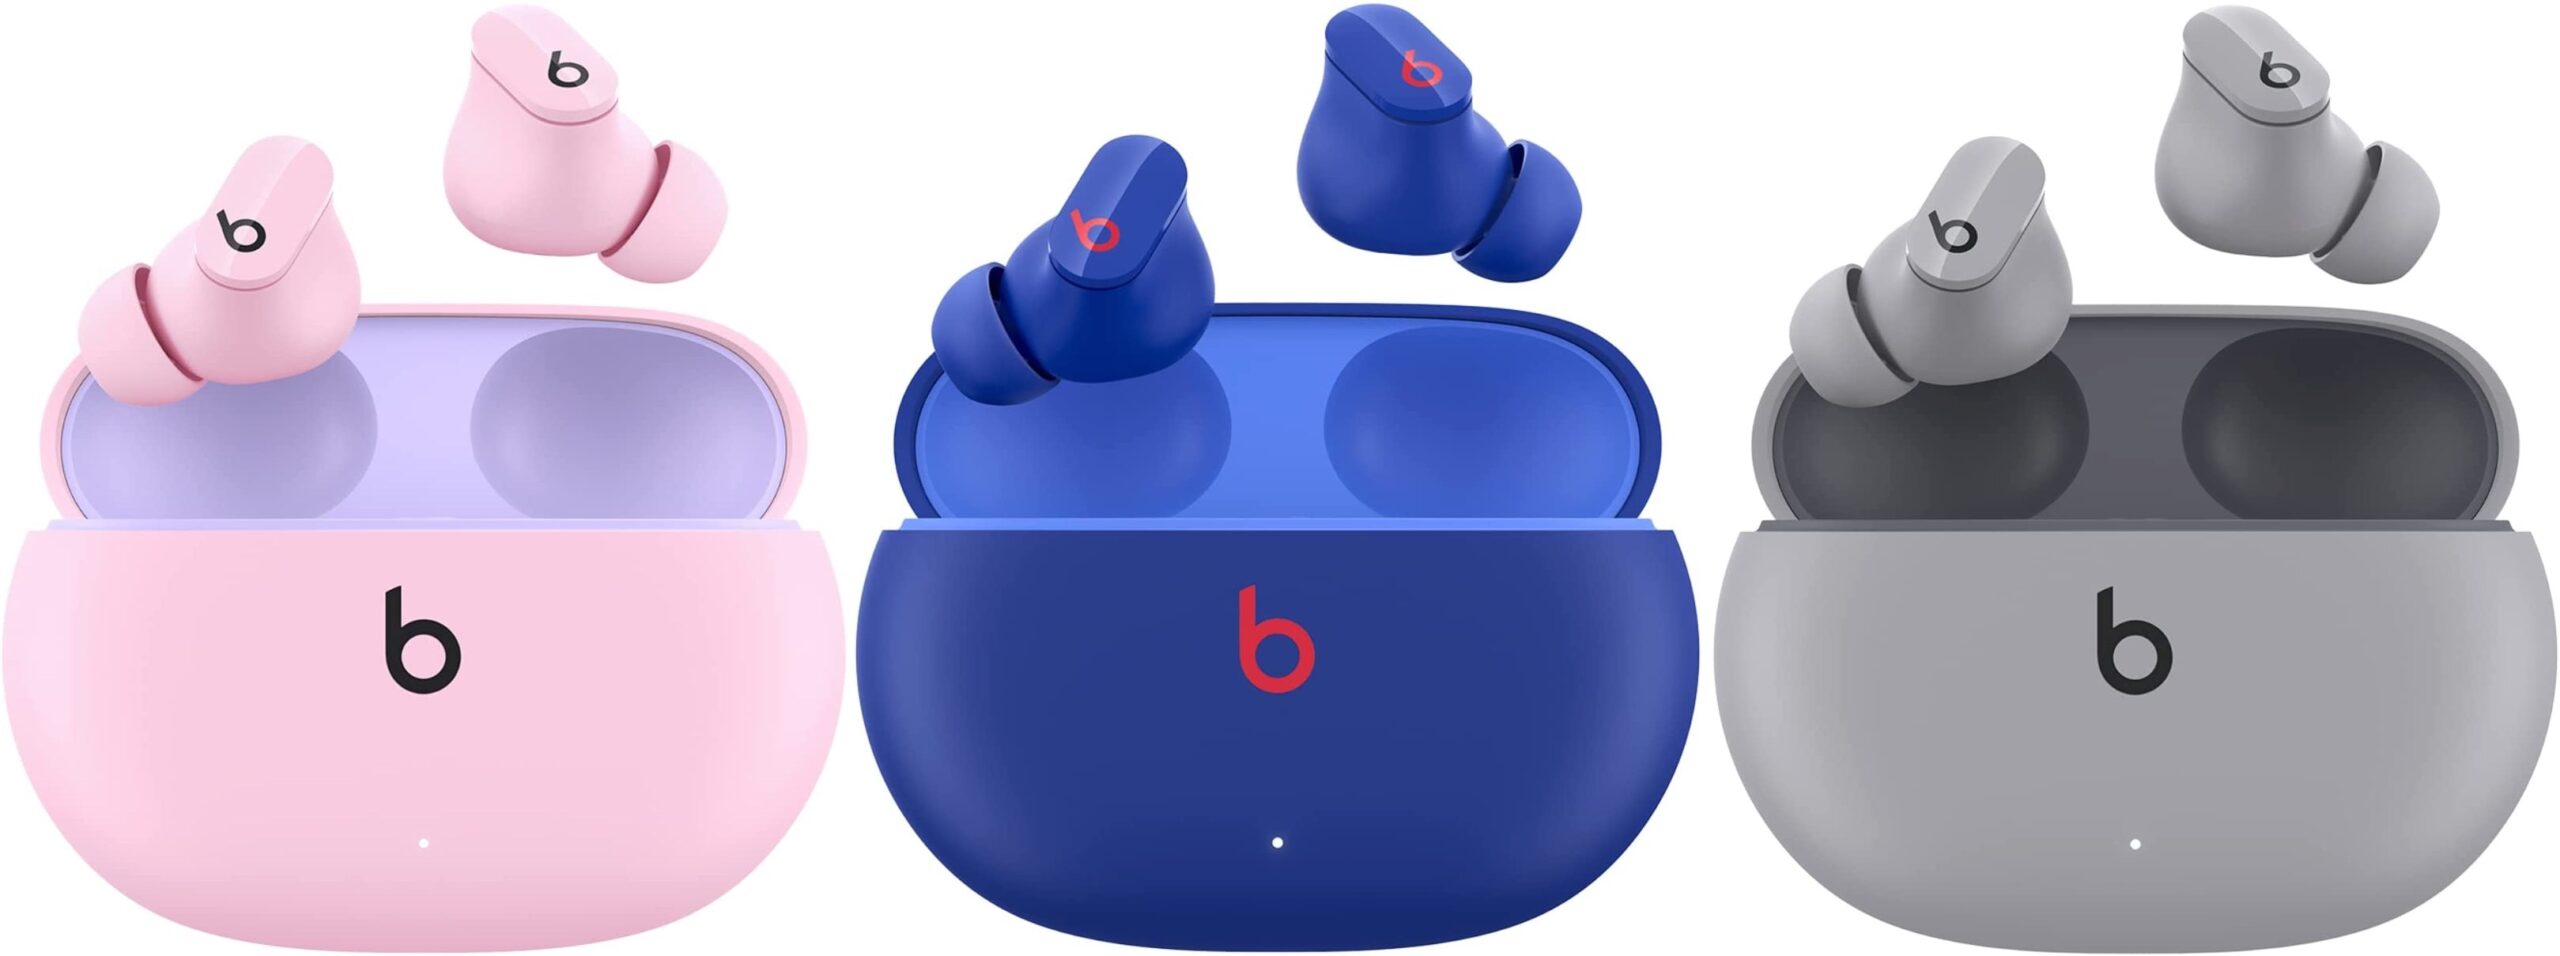 3 paires d'écouteurs Beats Studio Buds rose, bleu, gris